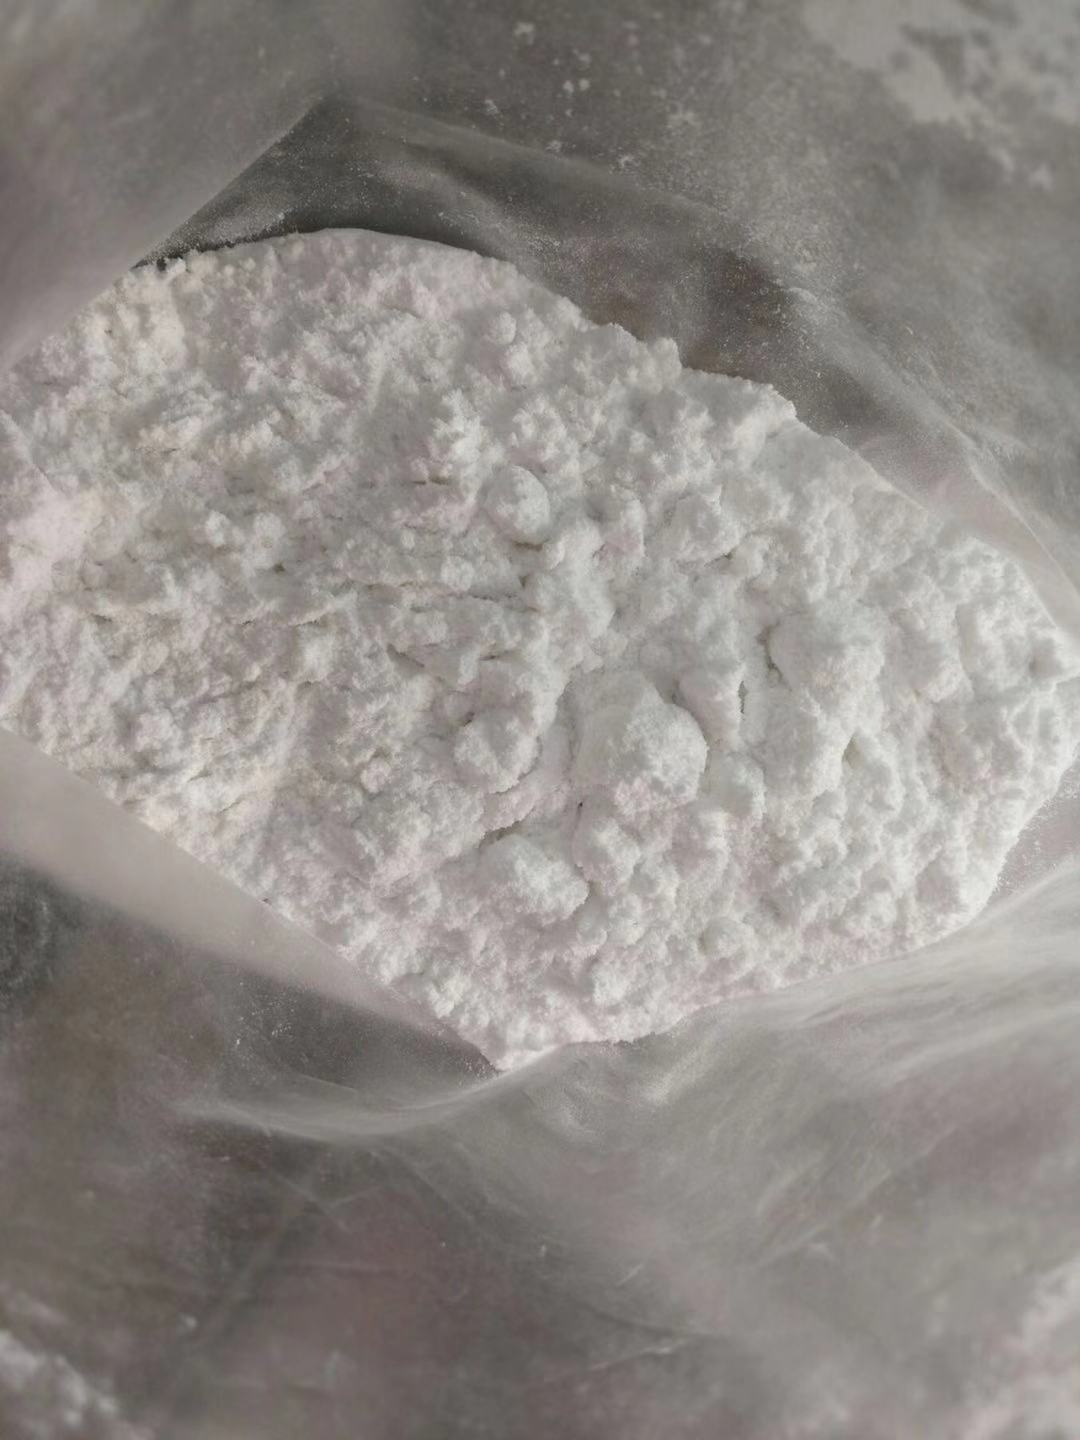 USA Warehouse 99% Pure Estradiol Powder CAS 50-28-2 and CAS 979-32-8 Estradiol Valerate CAS 4956-37-0 Estradiol Enanthate